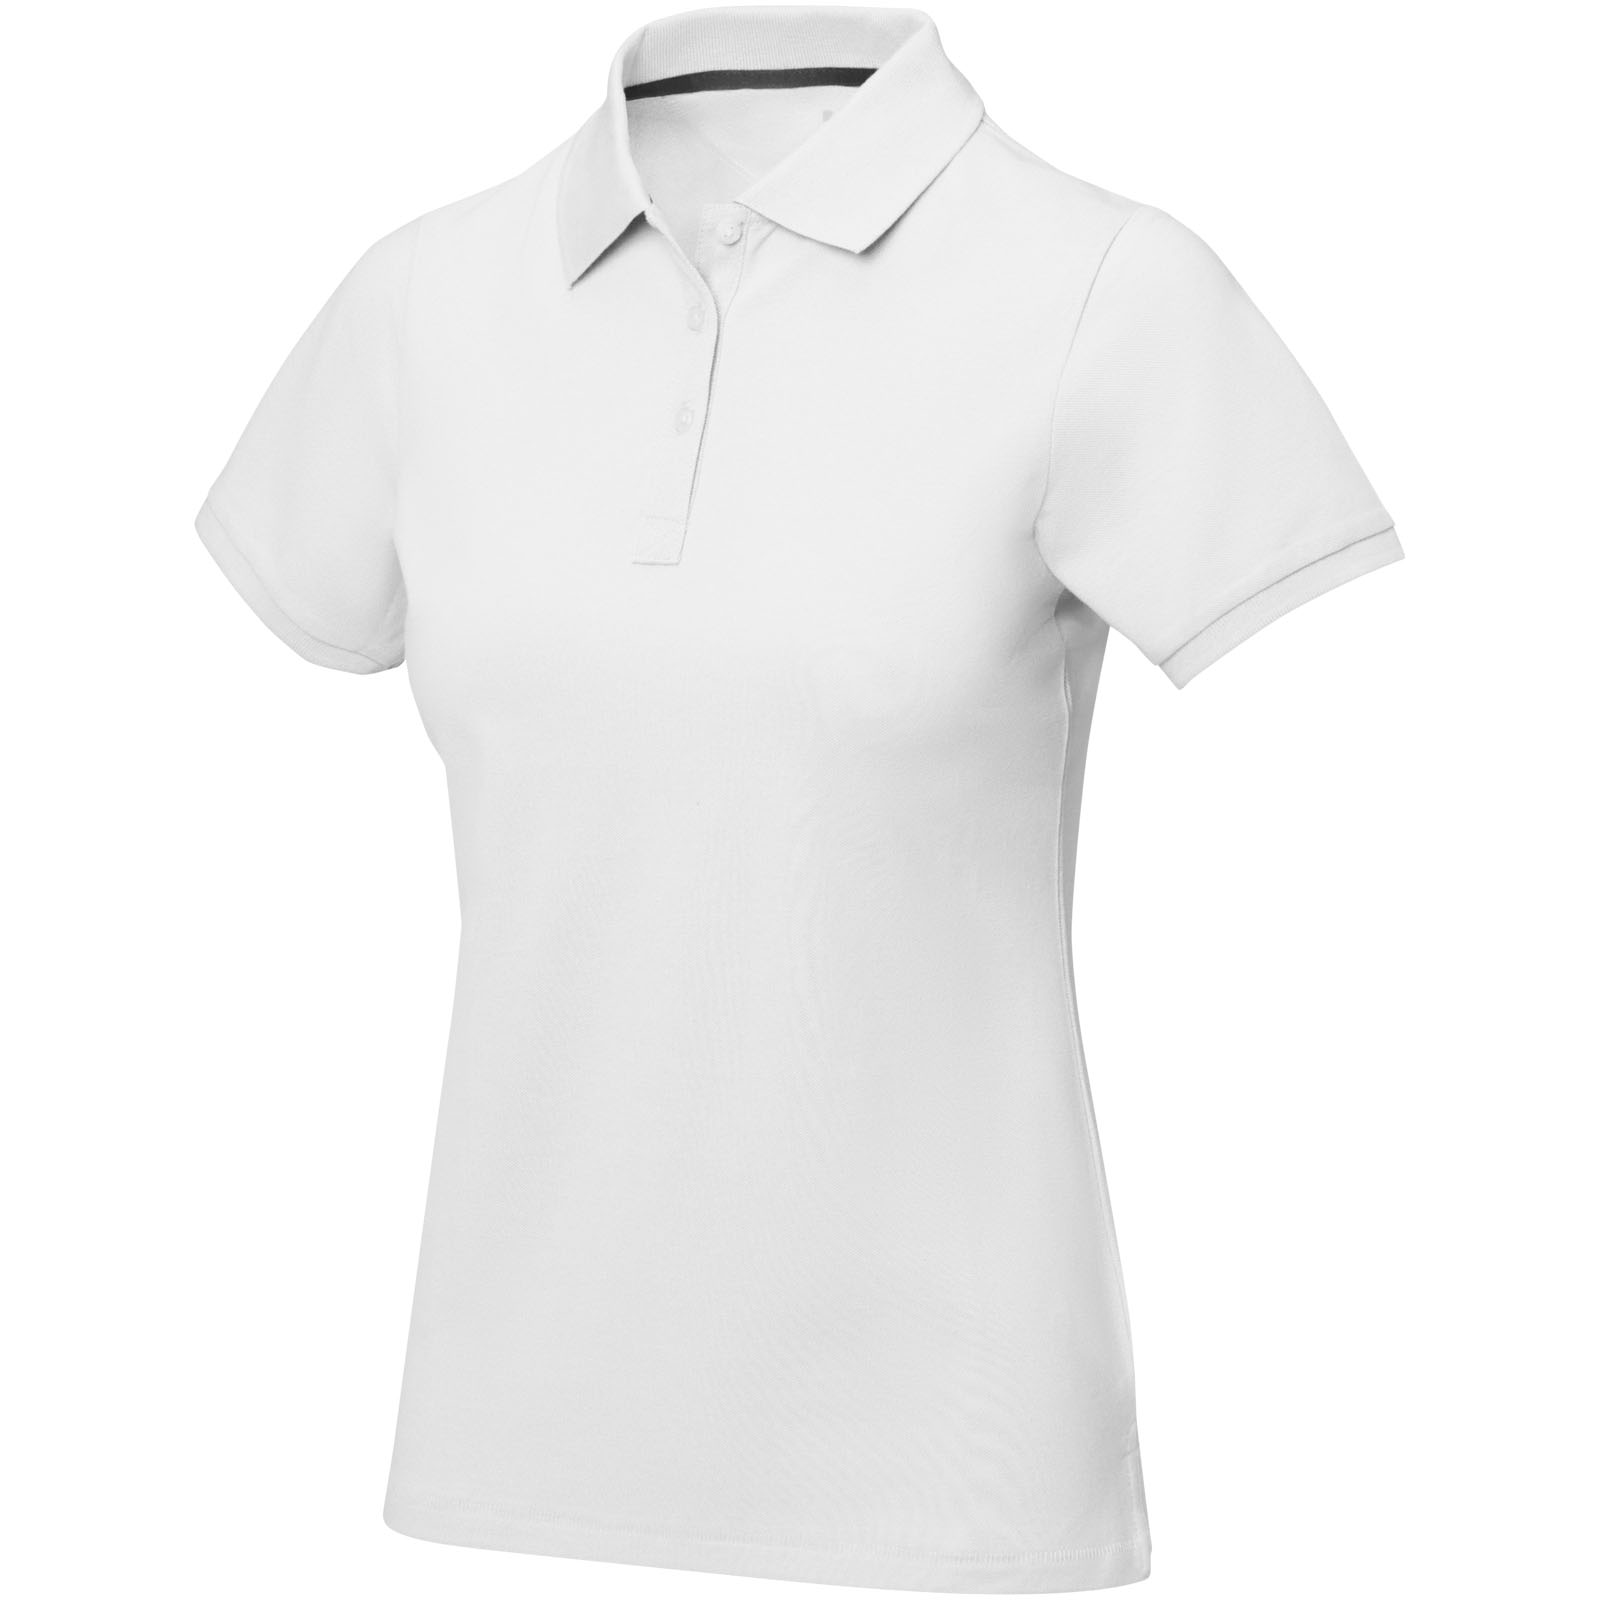 Clothing - Calgary short sleeve women's polo